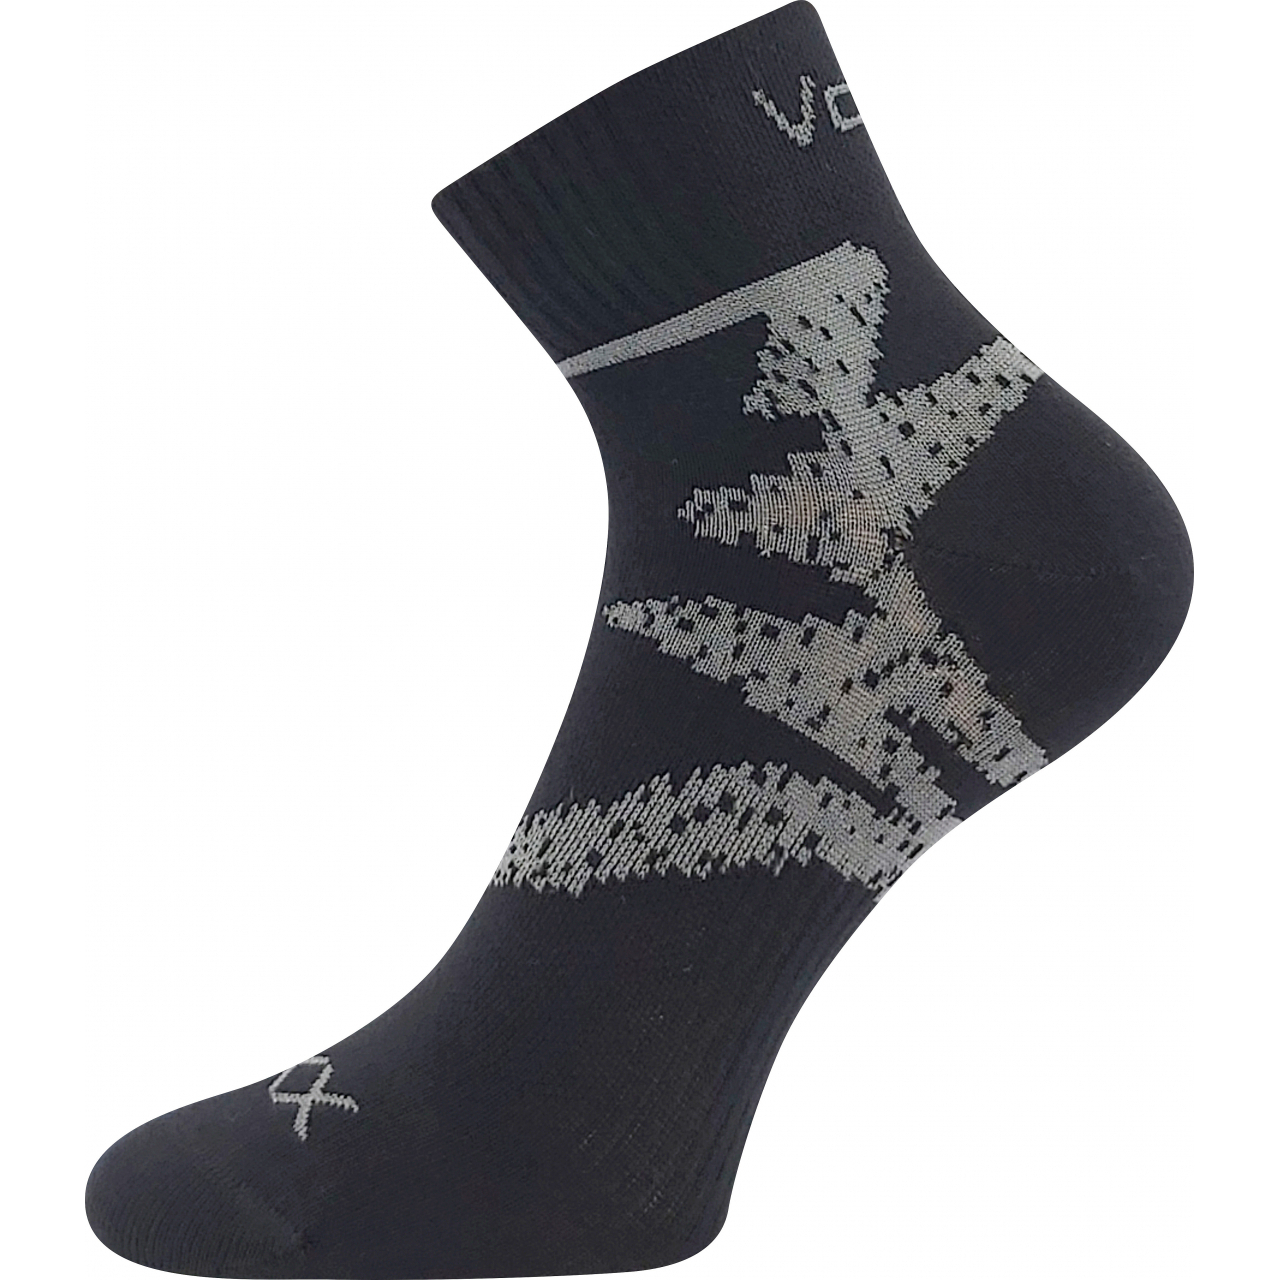 Ponožky sportovní unisex Voxx Franz 05 - černé-šedé, 39-42